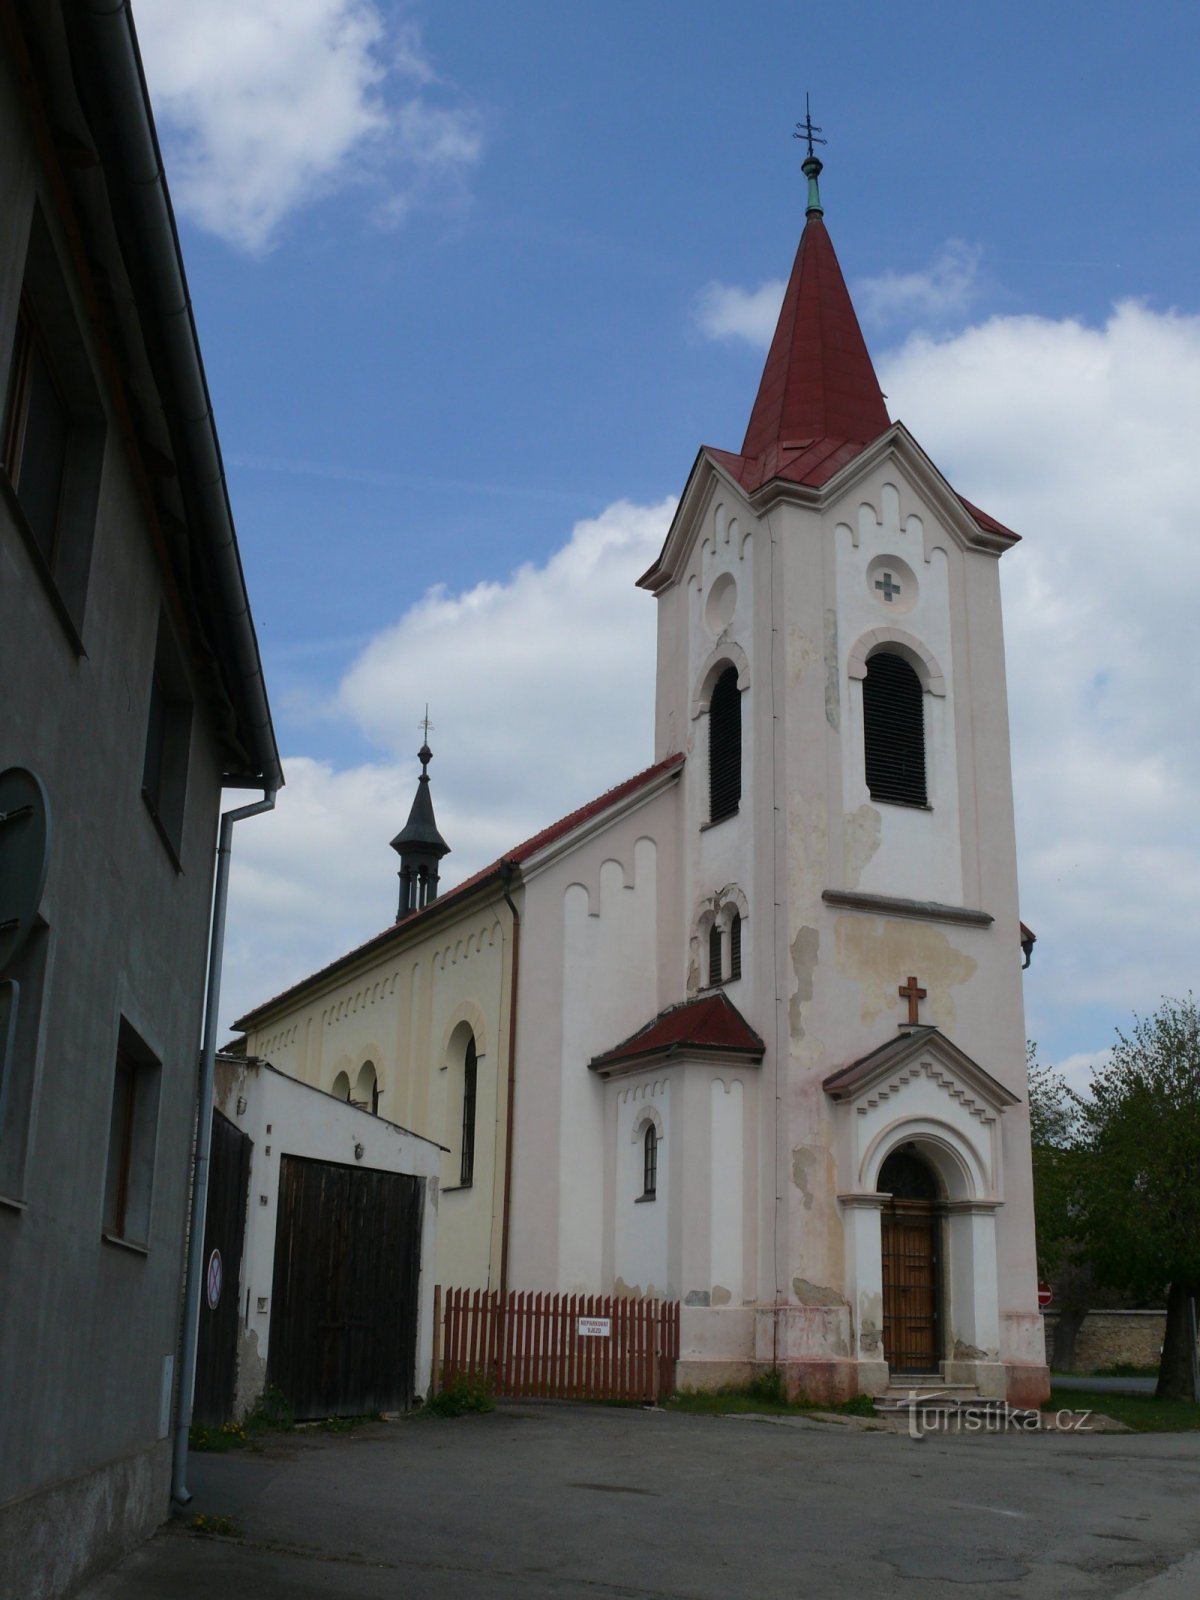 Церковь св. Мартина в Тршеботове